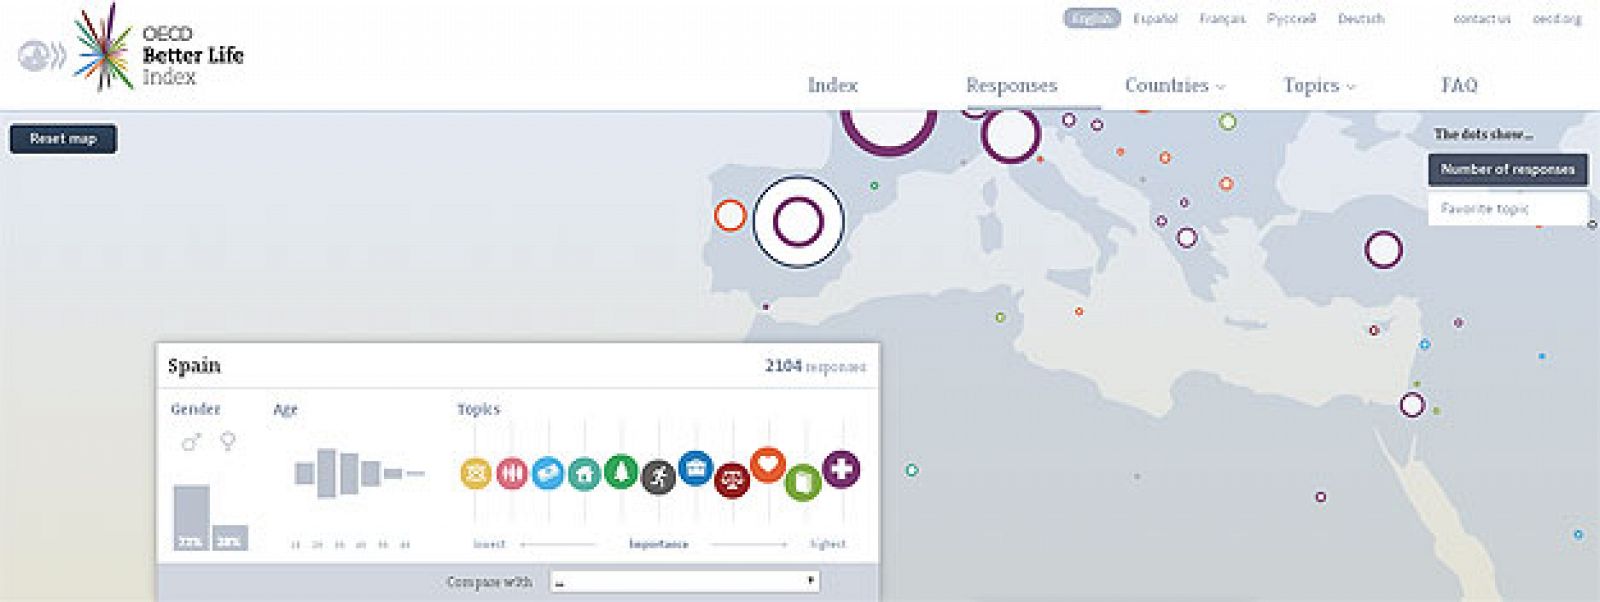 Mapa interactivo sobre el indicador de una vida mejor de la OCDE